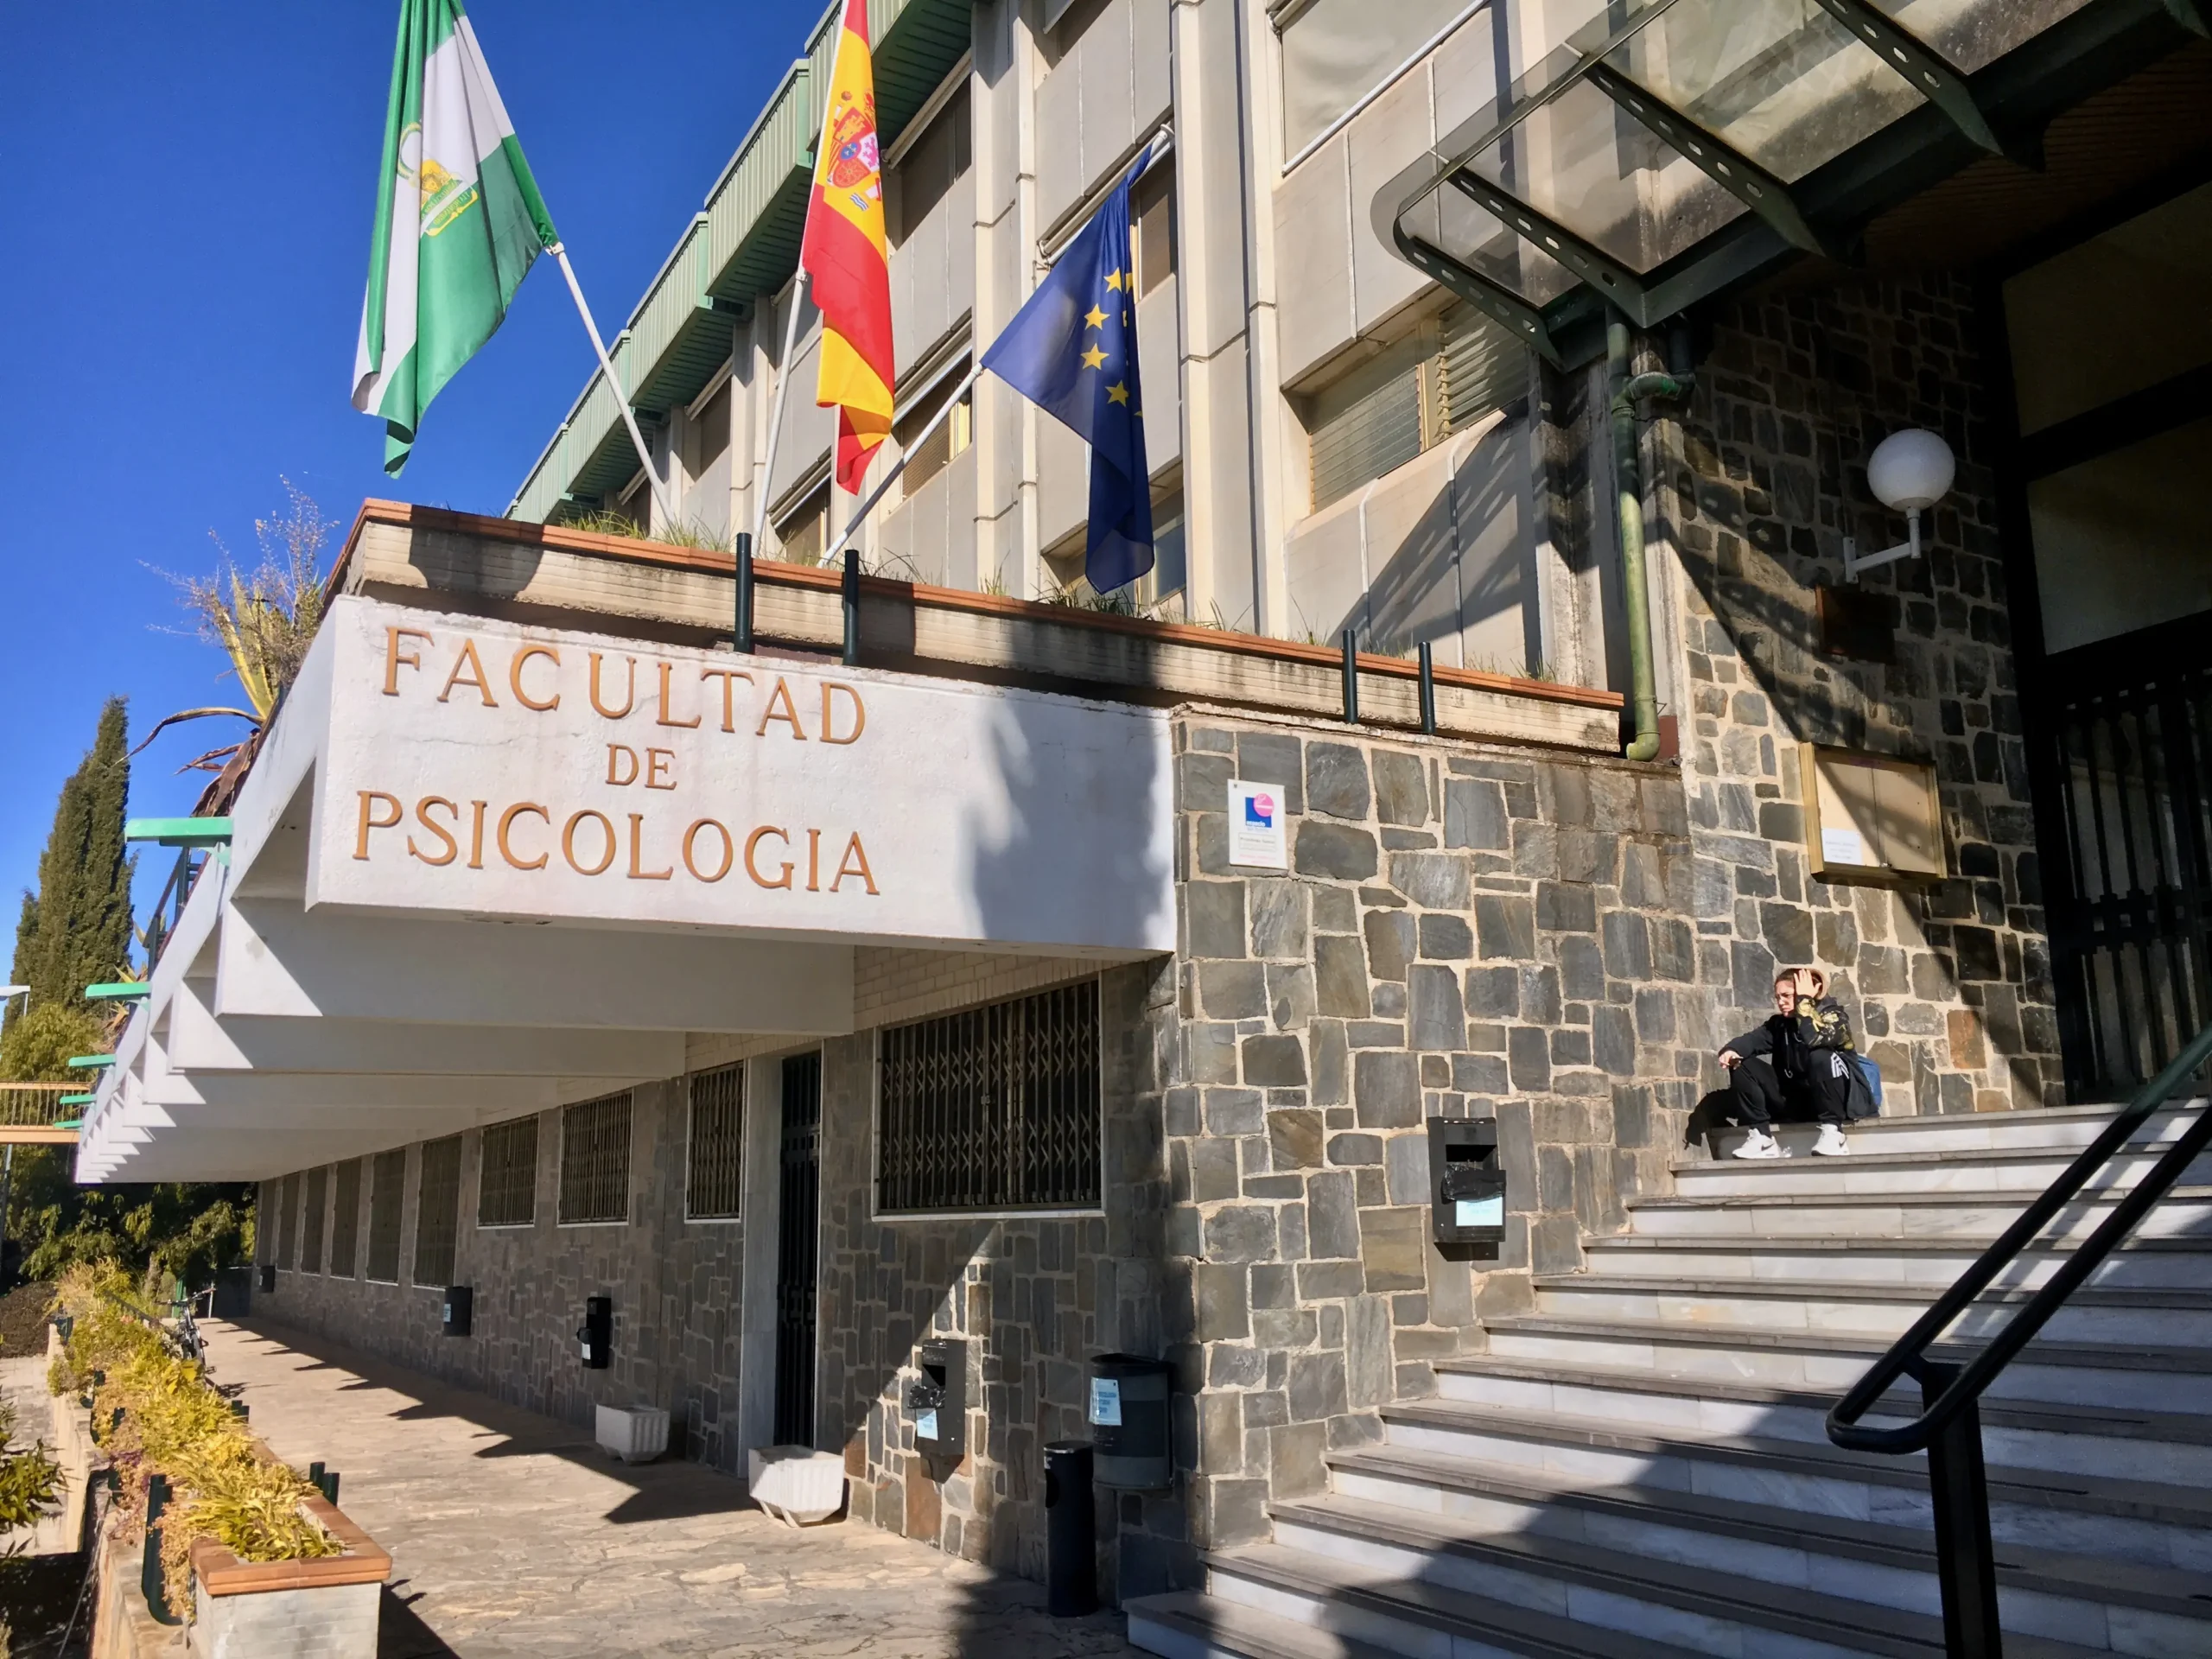 universidad de psicologia - Cuántos años dura la carrera de Psicología en la Universidad